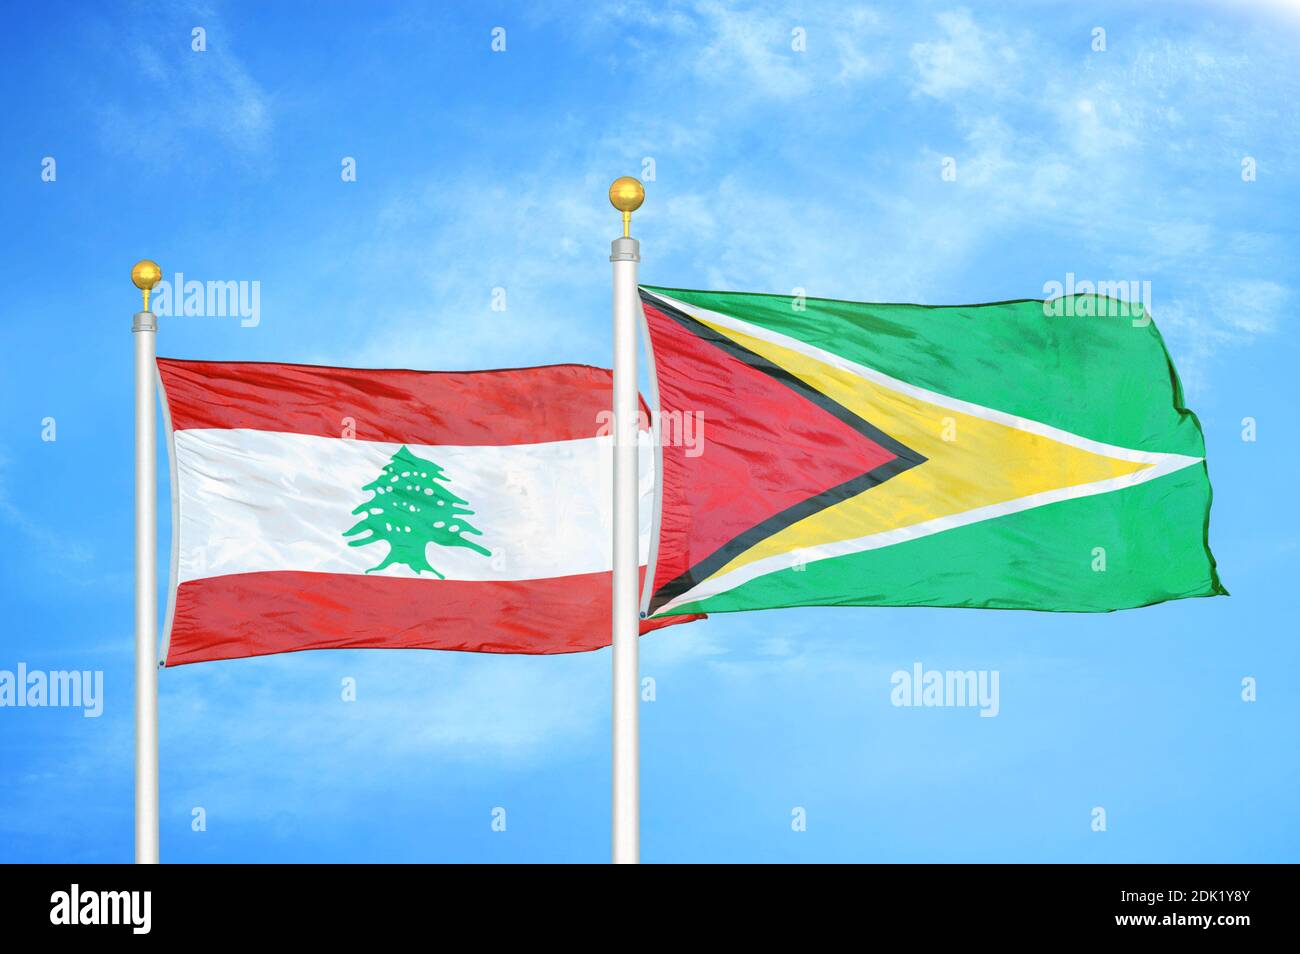 Libanon und Guyana zwei Flaggen auf Fahnenmasten und blau bewölkt Himmel Stockfoto